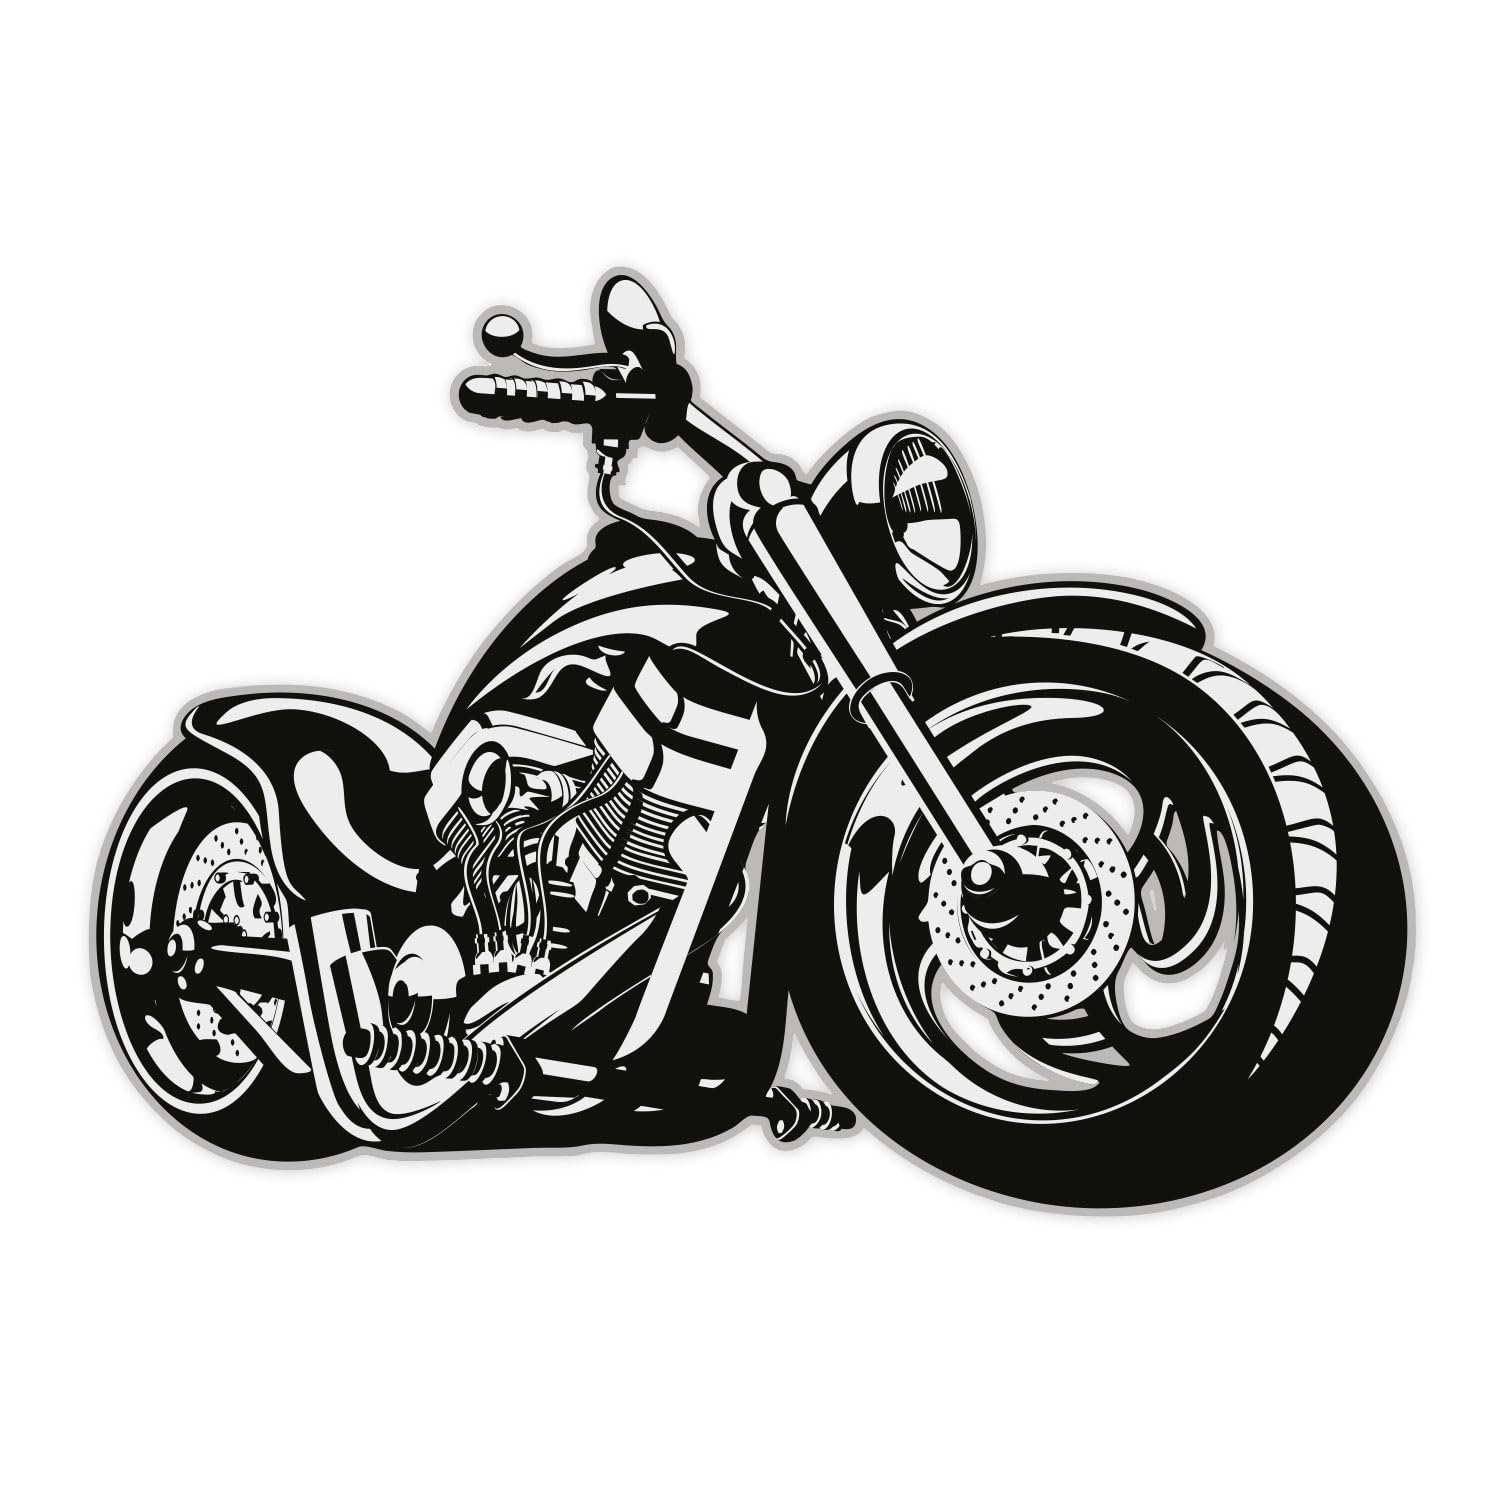 easydruck24 Wandtattoo Custom Bike, Art. Nr. kfz_266, Schwarz/Weiß, Harley Moped Chopper, Tattoo für die Wand, Matt laminiert, Vergilbungsfrei, Raufaser geeignet (500mm x 360mm) von easydruck24